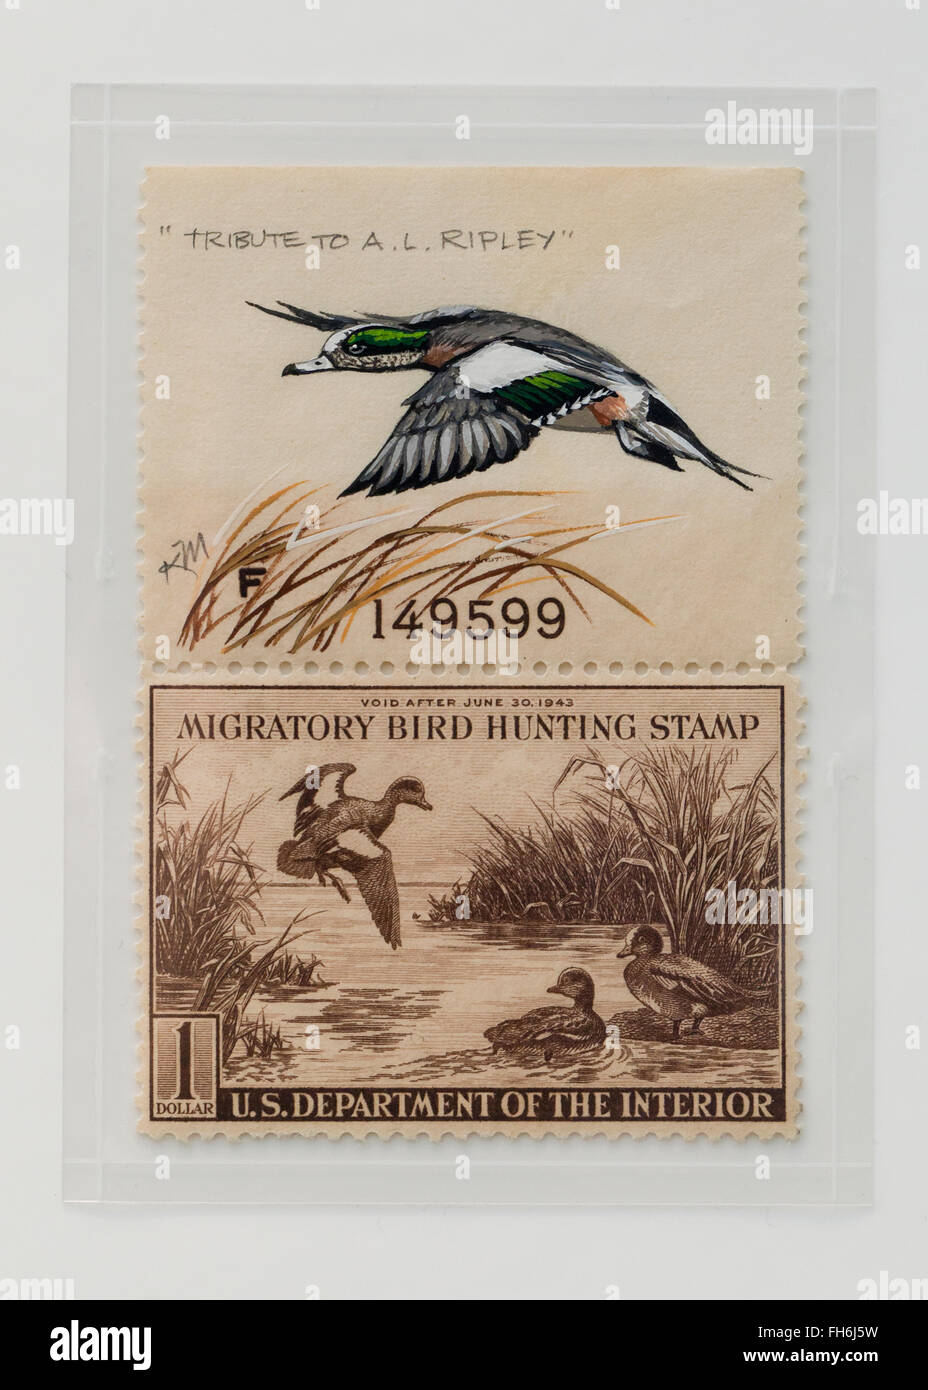 Vintage di uccelli migratori timbro di caccia $1 Baldtapes timbro, circa 1942 - USA Foto Stock